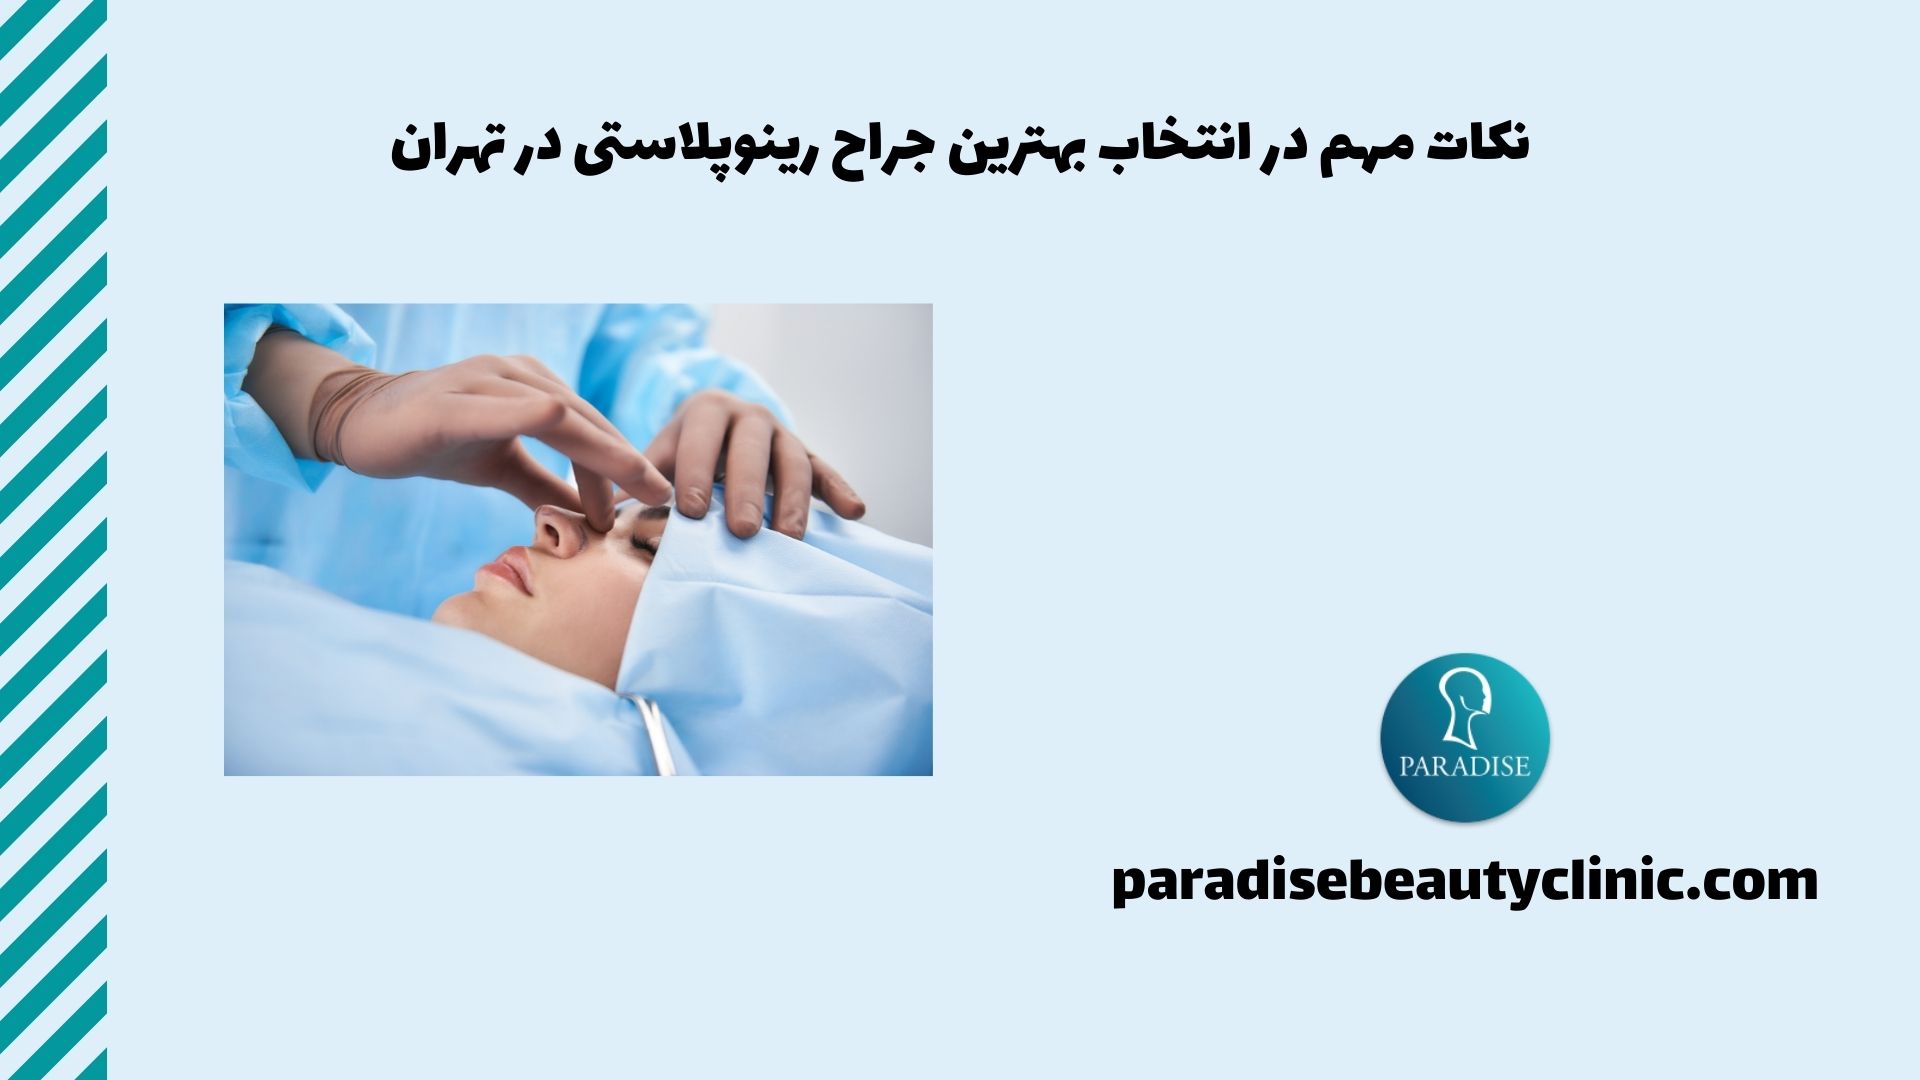 نکات مهم در انتخاب بهترین جراح رینوپلاستی در تهران